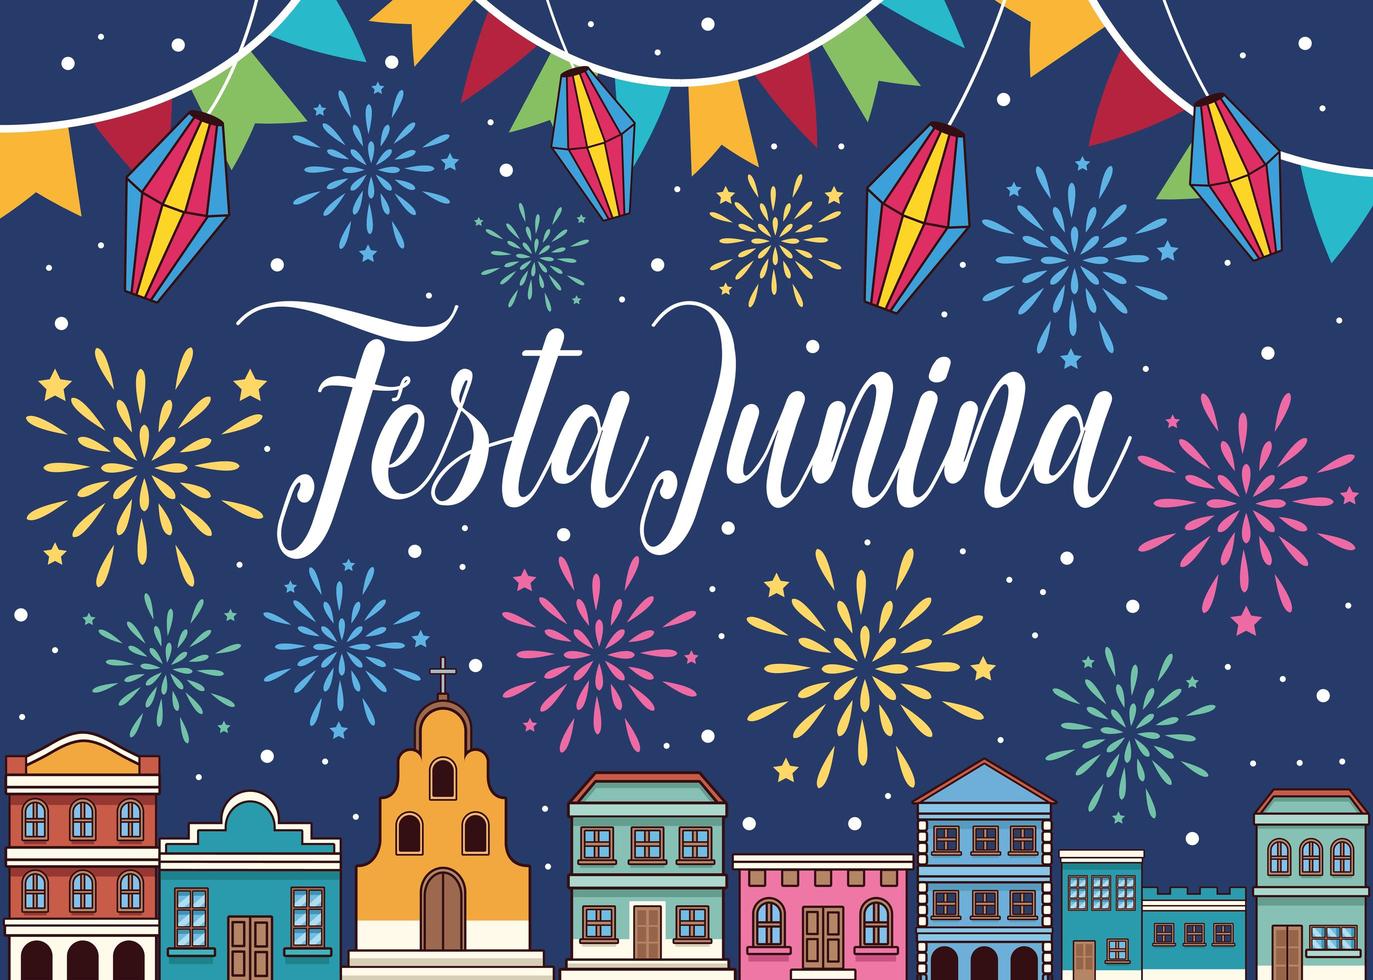 festa junina celebration vector